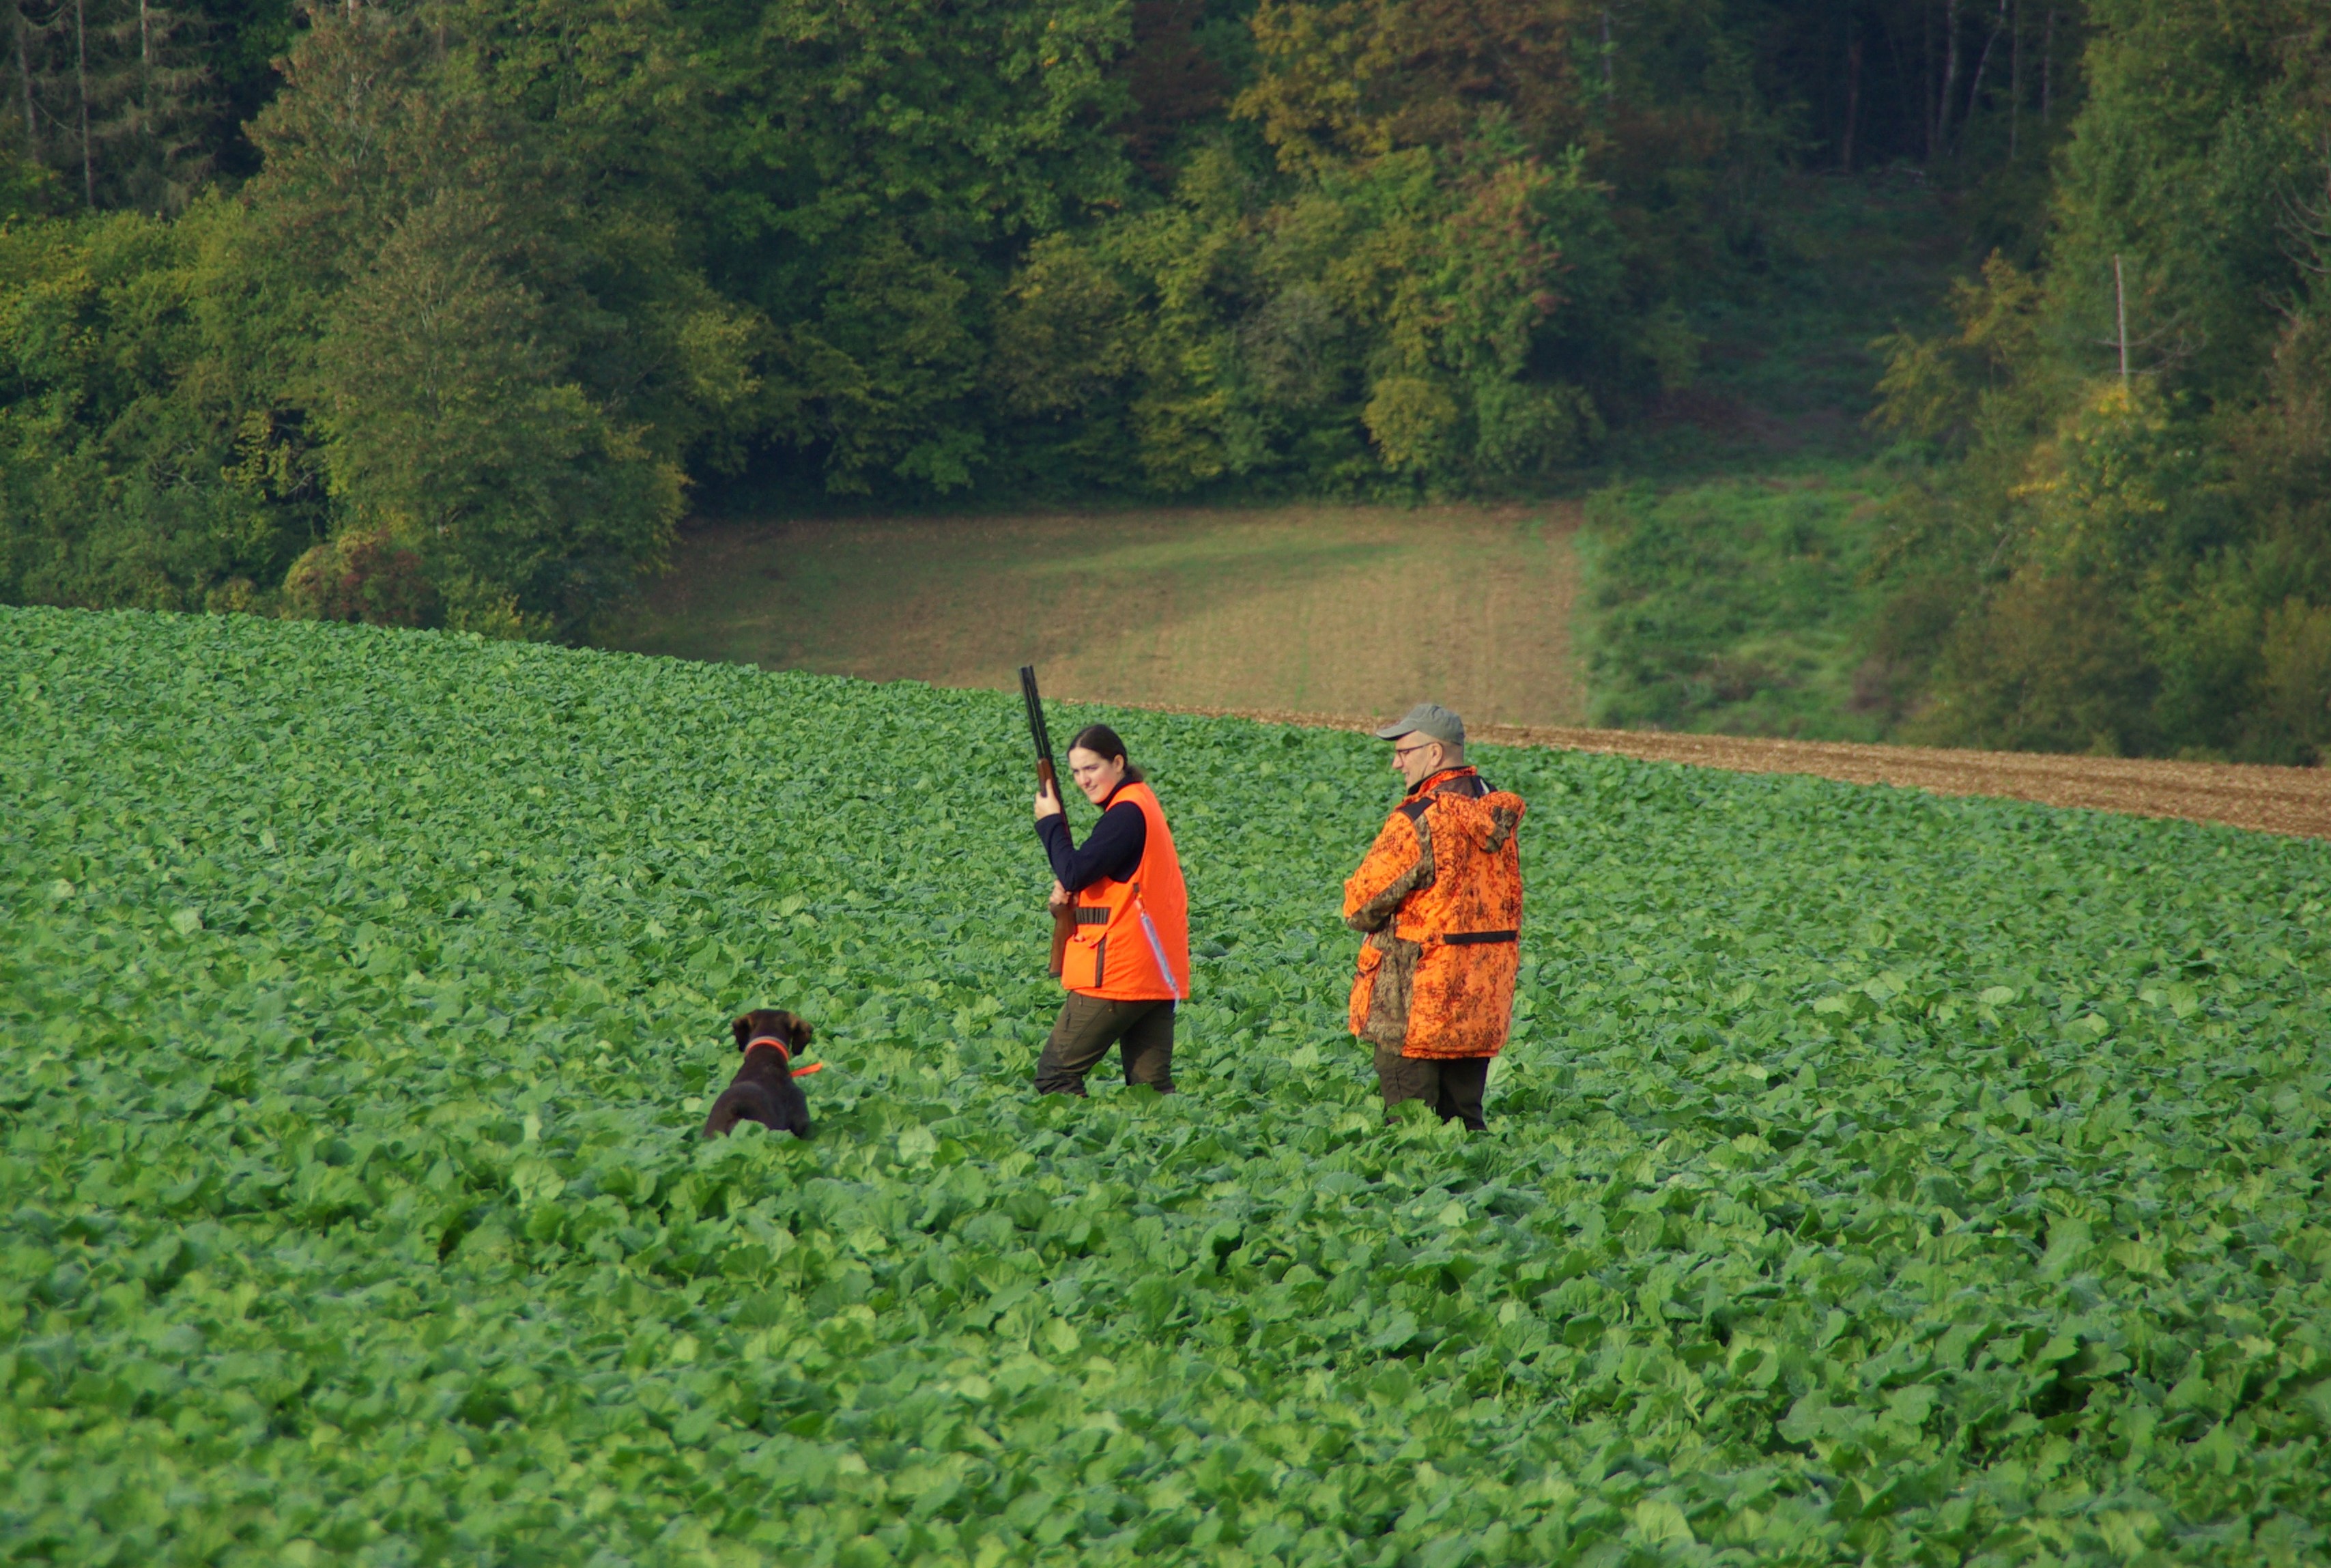 Les Rencontres Saint-Hubert s’adressent exclusivement aux chasseurs possédant des chiens d’arrêt ou spaniels. Crédit photo : Daniel FOERTSCH